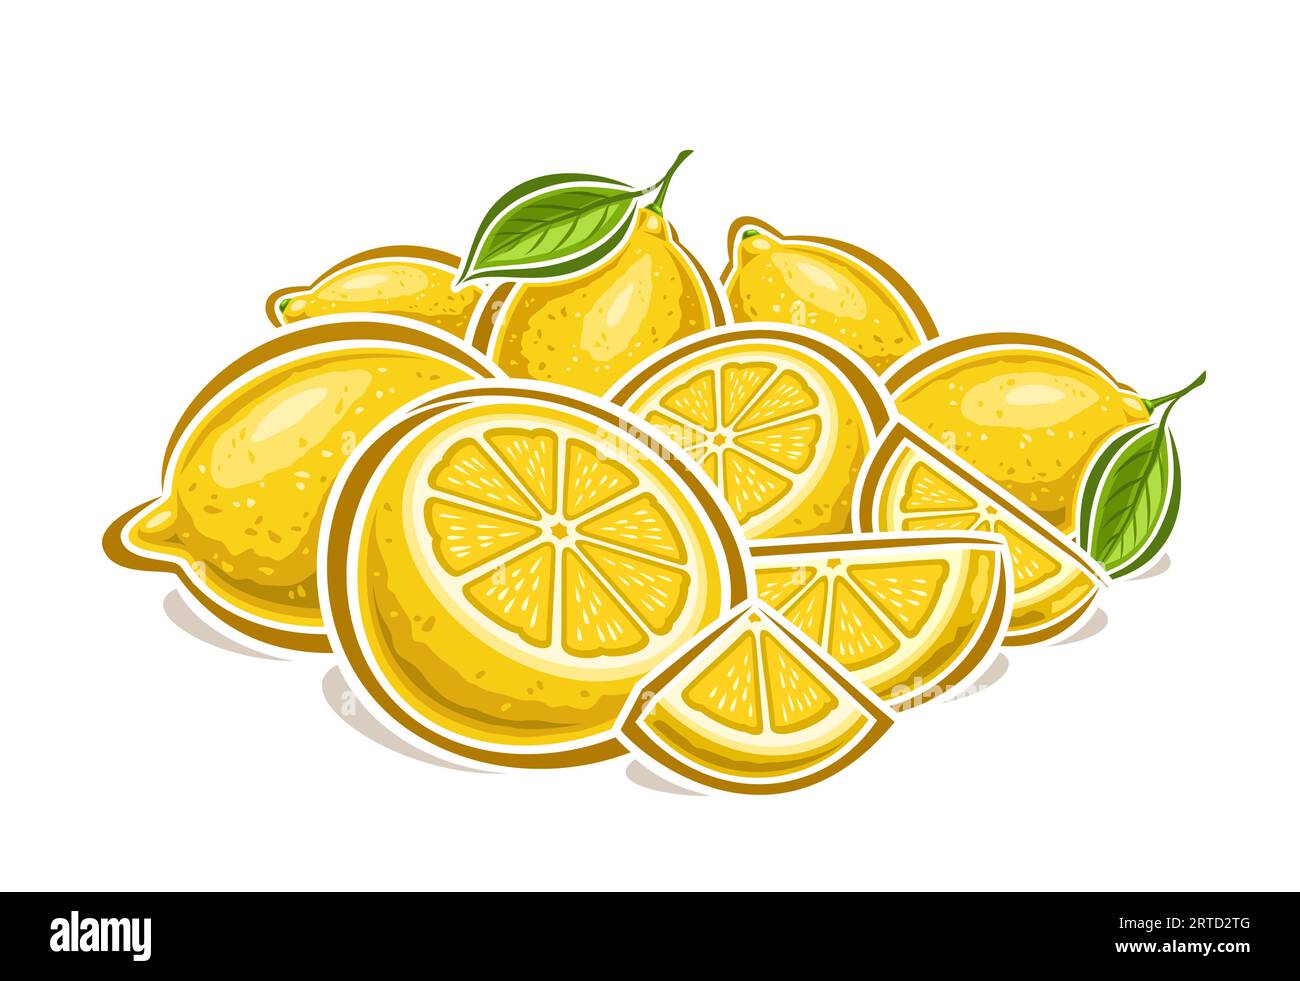 Logo vettoriale per i limoni, poster decorativo orizzontale con disegno a cartoni animati composizione "natura morta" al limone fruttato, stampa alla frutta con molti pezzi interi e tagliati Illustrazione Vettoriale